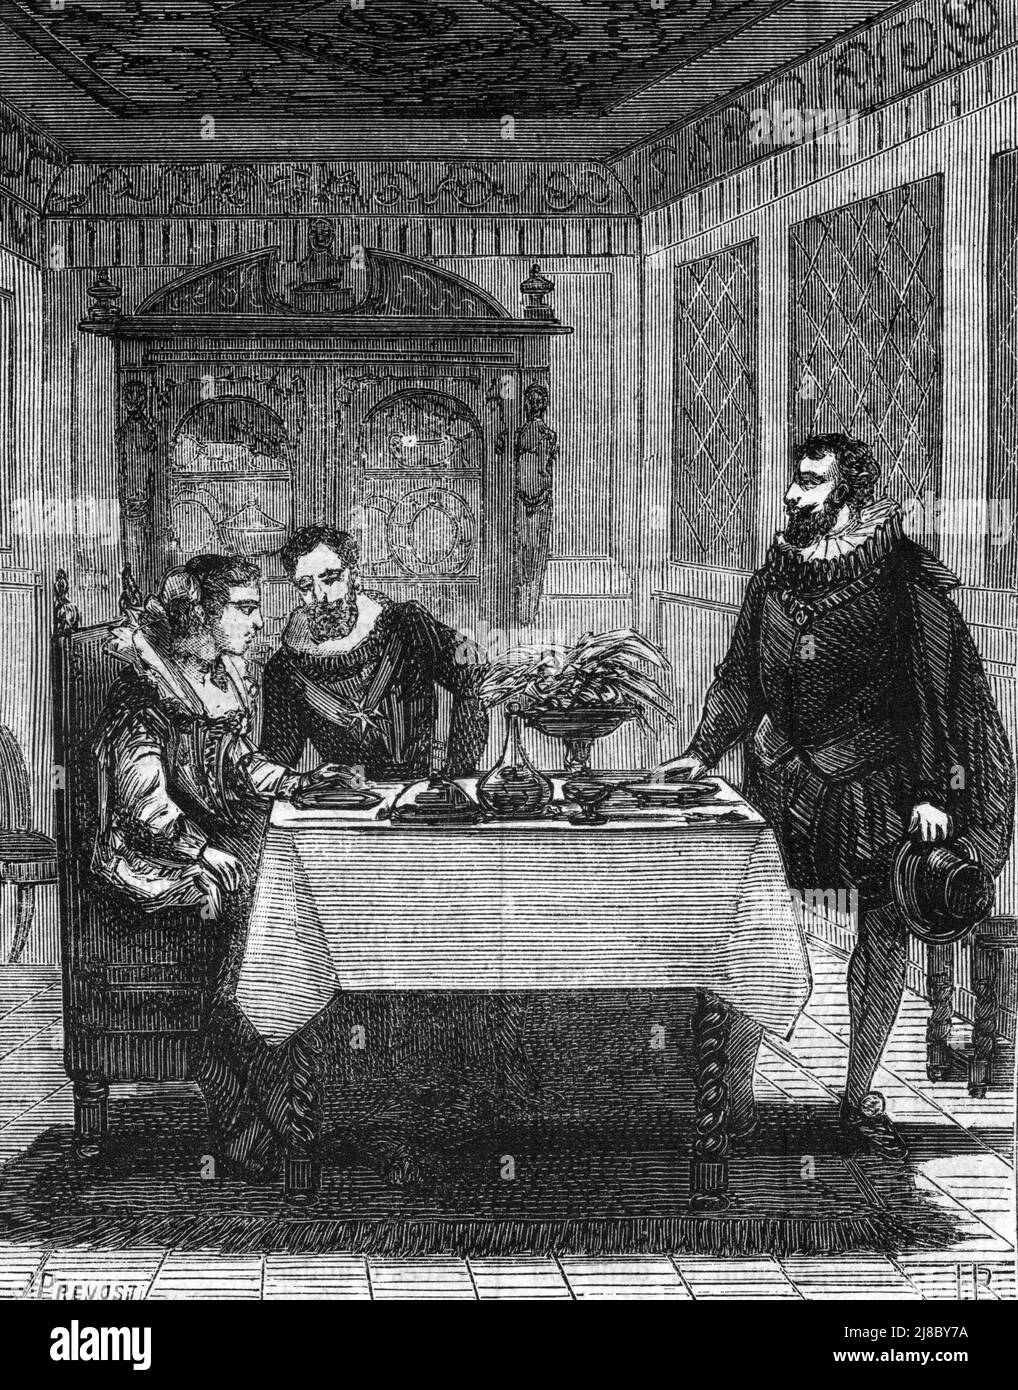 Le roi Henri IV (1553-1610) et Gabrielle d'Estrees (1573-1599) chez Sebastien Zamet (Sebastiano Zametti) (1549-1614) dans son Hotel particulier de la rue de la cerisaie a Paris' (König Henri IV. Und Gabrielle d'estrees in Zamets Haus in Paris) Gravure tiree de 'Les Mysteres du Grand monde' de Fulgence Girard Collection privee Stockfoto